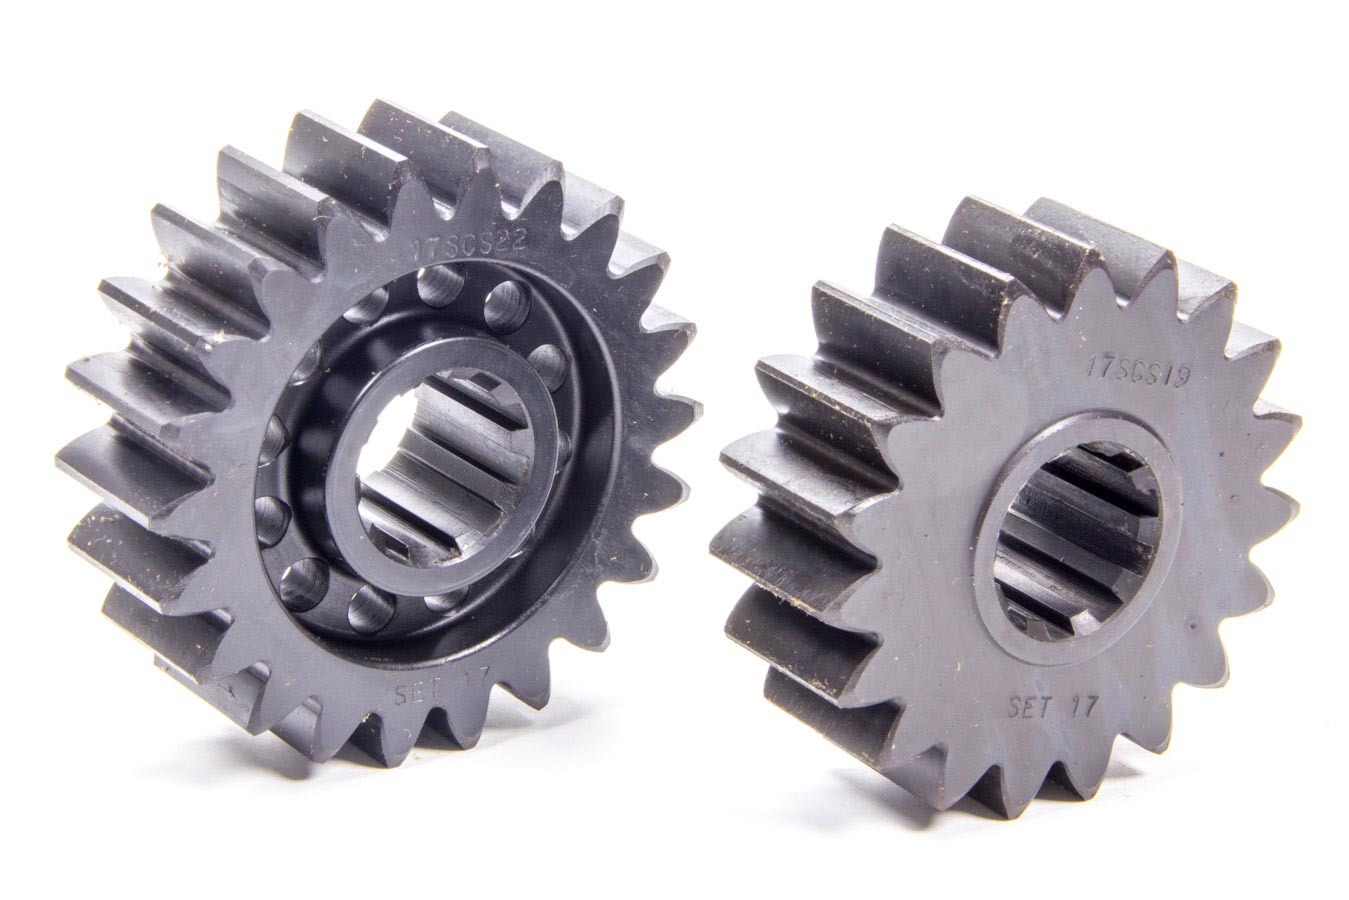 SCS Gears 17 Quick Change Gear Set, Professional, Set 17, 10 Spline, 4.11 Ratio 4.76 / 3.55, 4.86 Ratio 5.63 / 4.20, Steel, Each